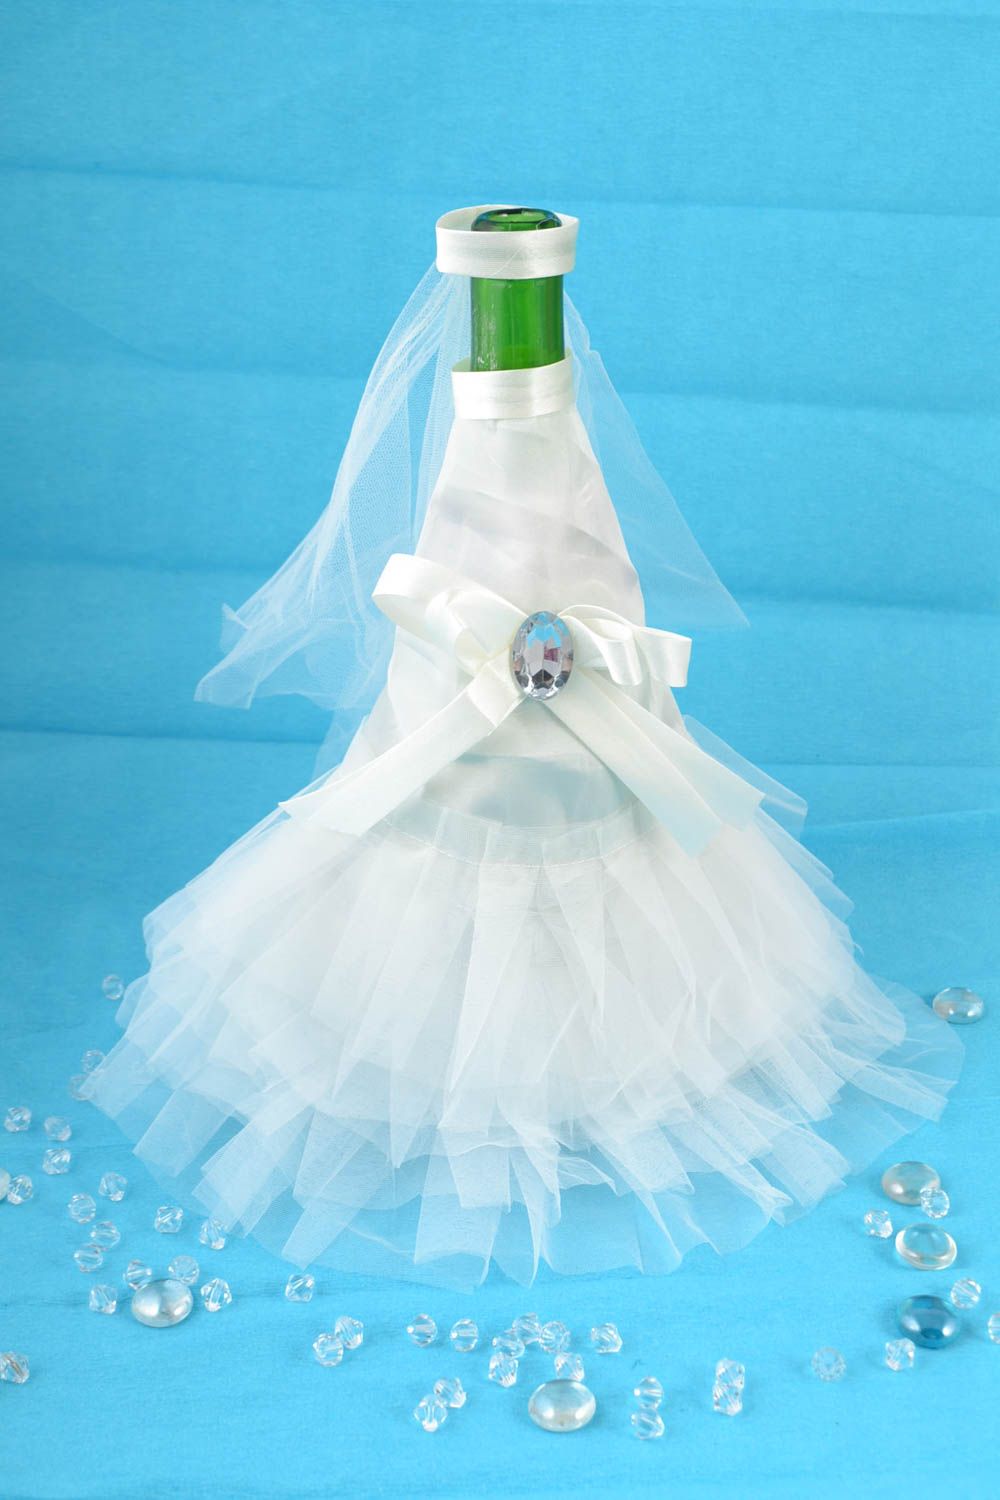 Одежда невесты на бутылку шампанского белая со стразом красивая ручной работы фото 1